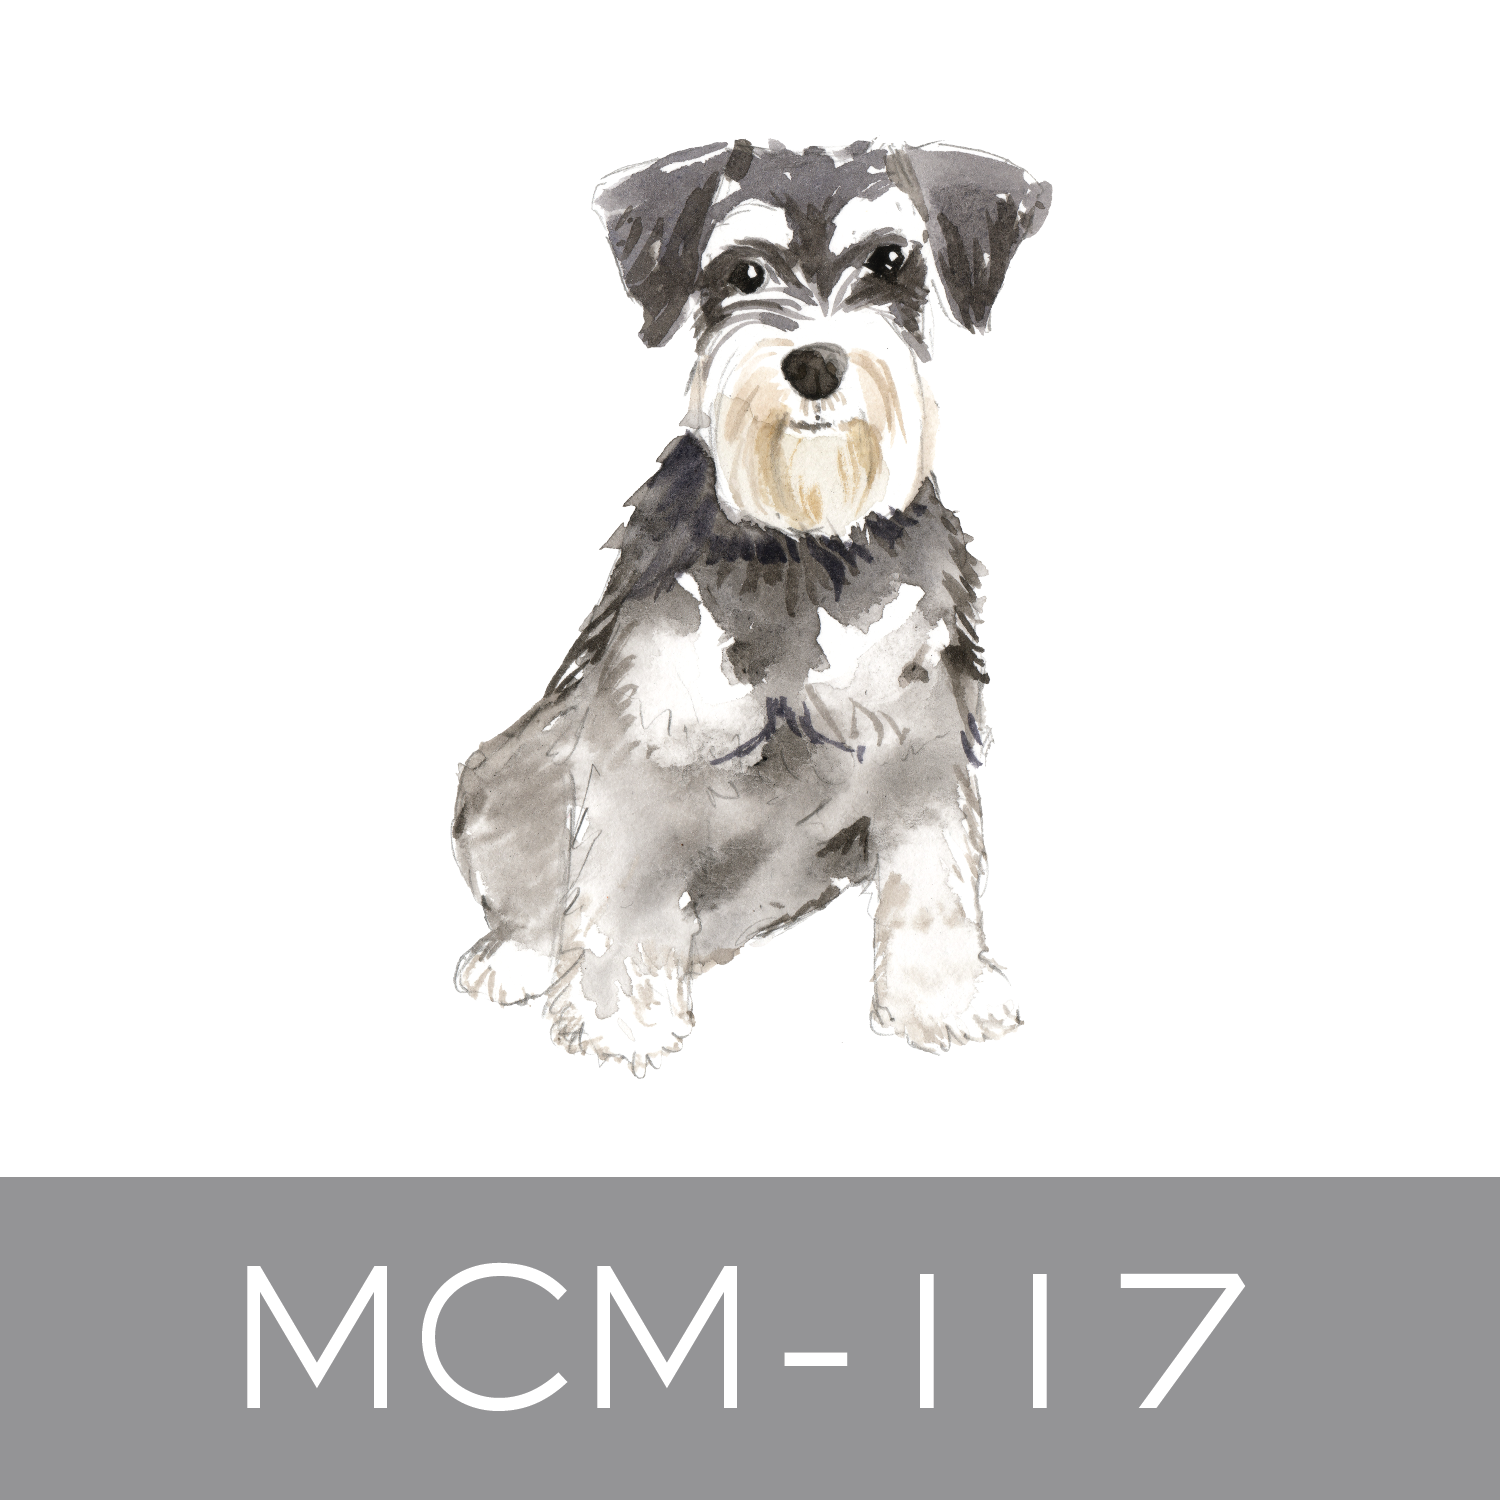 MCM-117.png